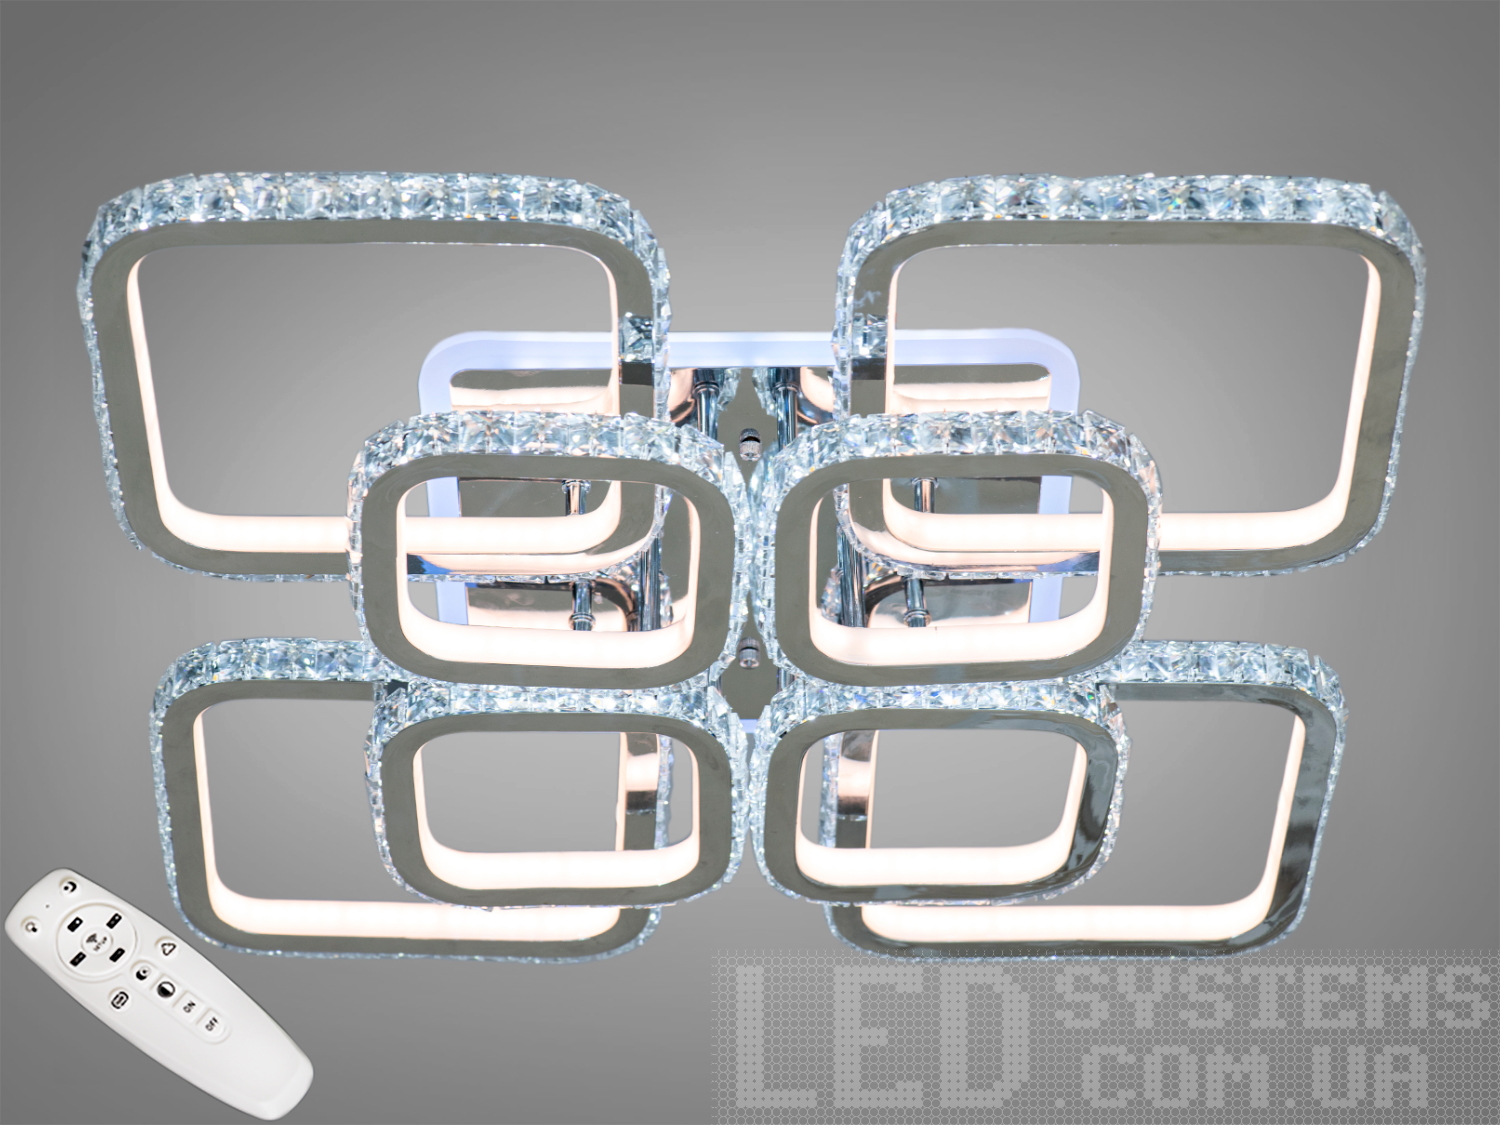 УЦІНКА! Кришталева LED-люстра з LED підсвічуванням, 320WХрустальные светодиодные люстры, Потолочные люстры, Светодиодные люстры, Люстры LED, Потолочные